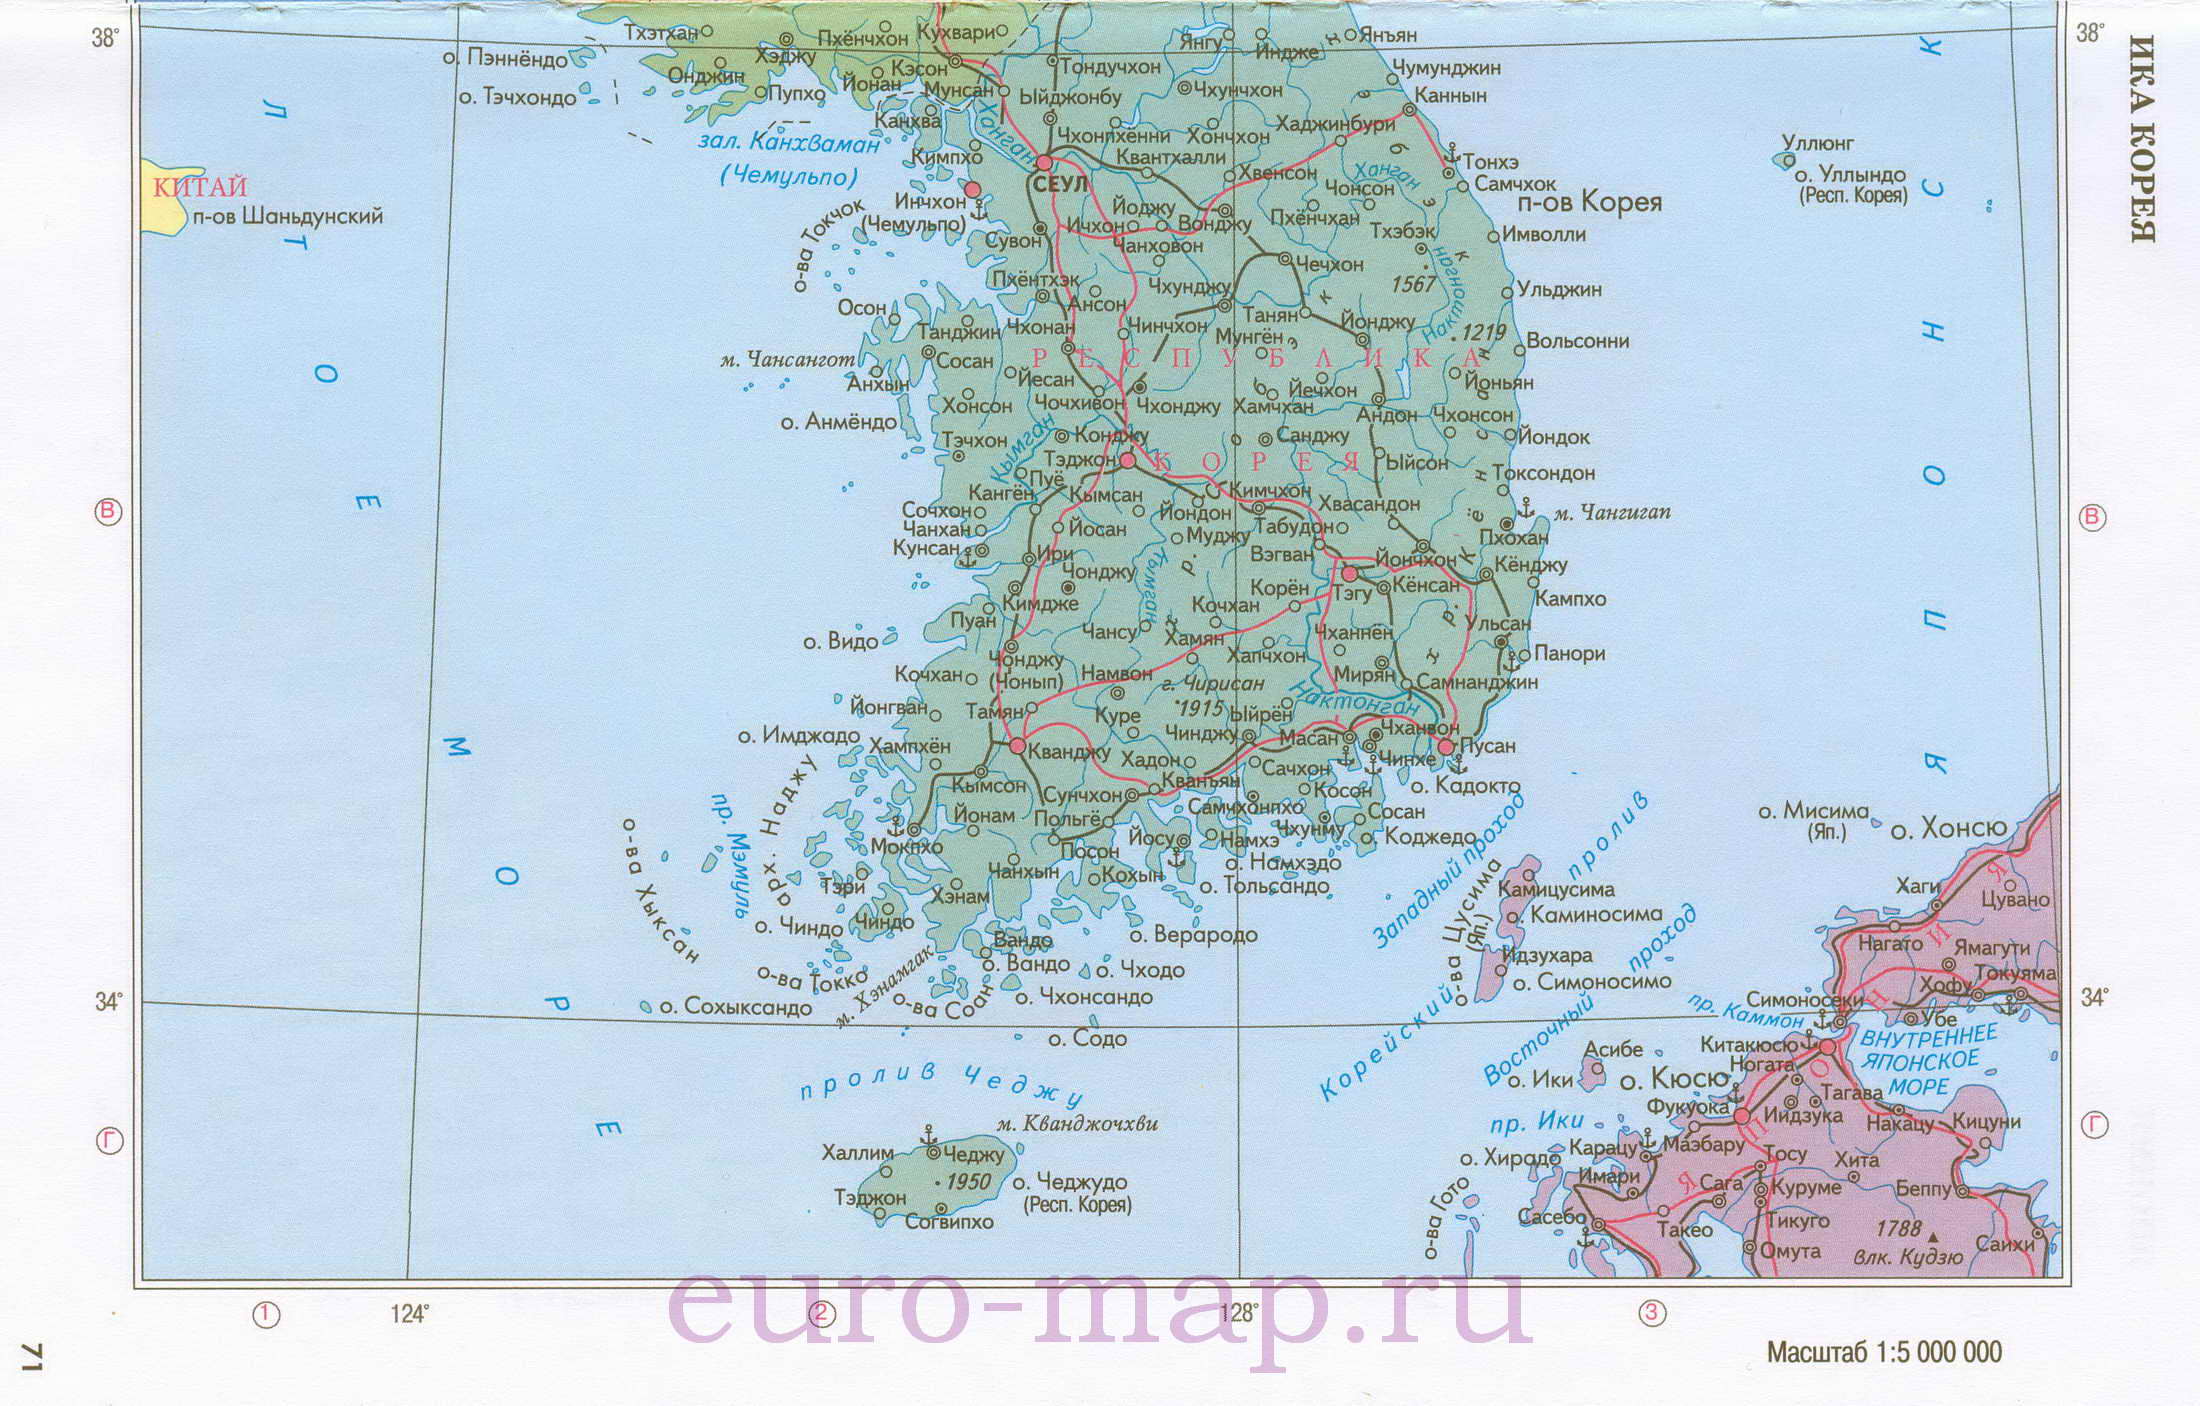 Карта КНДР и Южной Кореи. Политическая карта КНДР и Южной Кореи на русскомязыке, A1 -